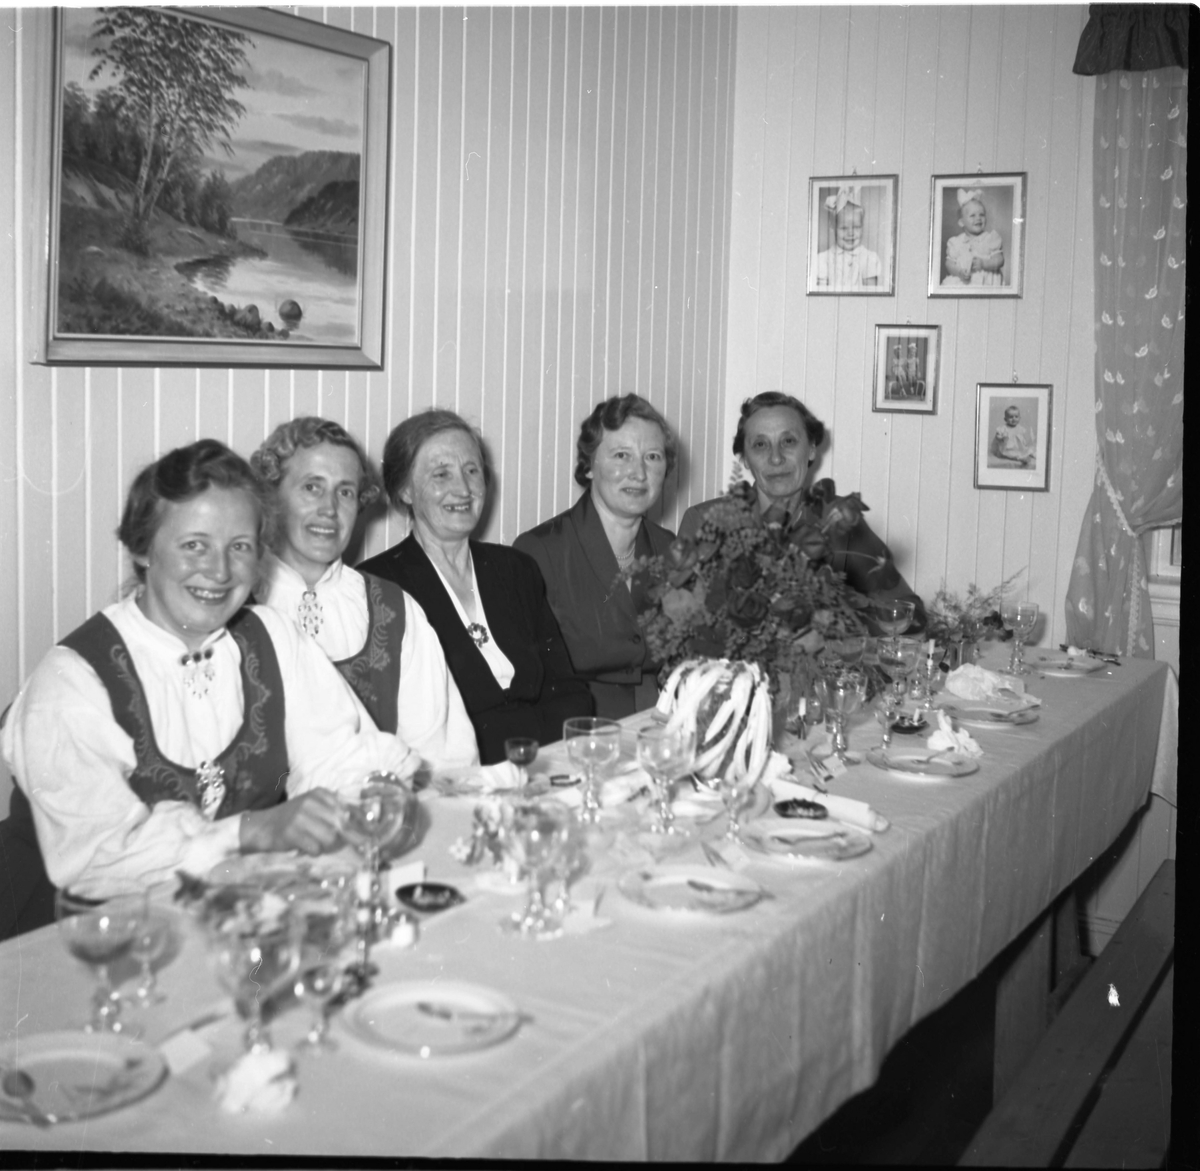 Bilde av penkledde gjester sittende til bords. Bryllupsfest?